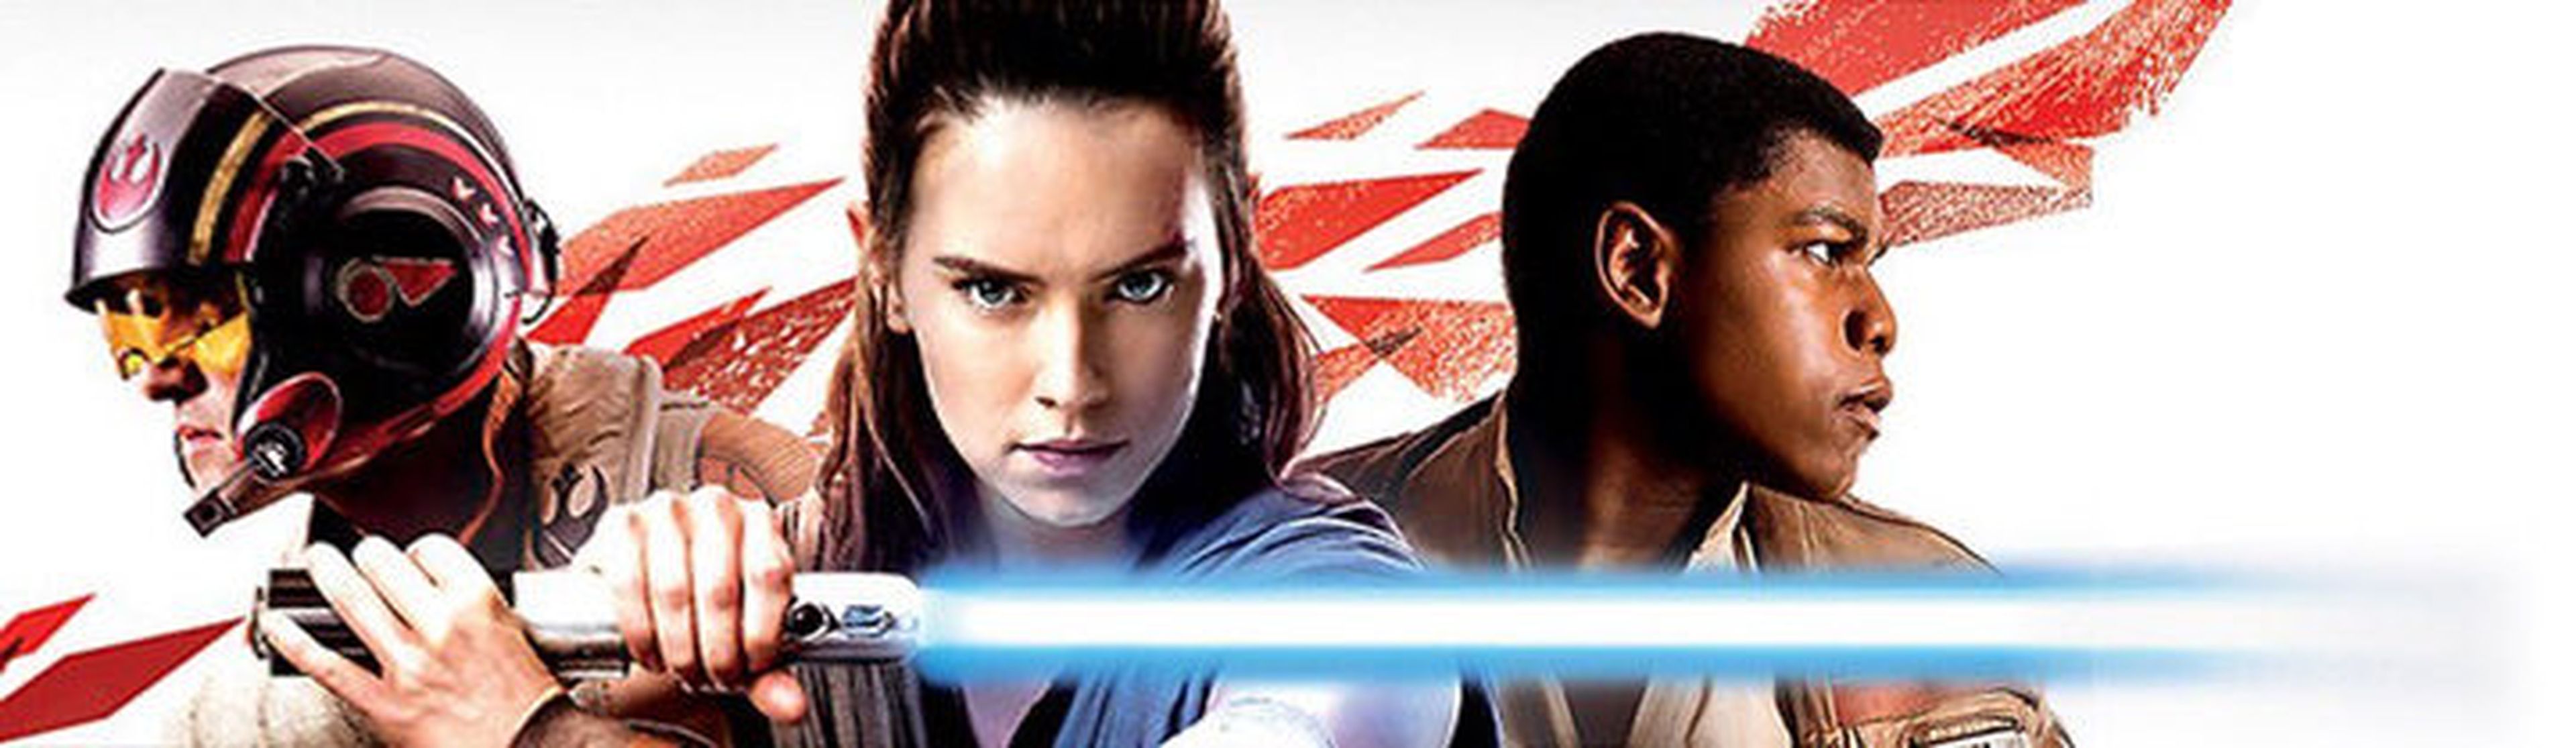 Star Wars: The Last Jedi - Rey, Finn y Poe en el merchandising oficial